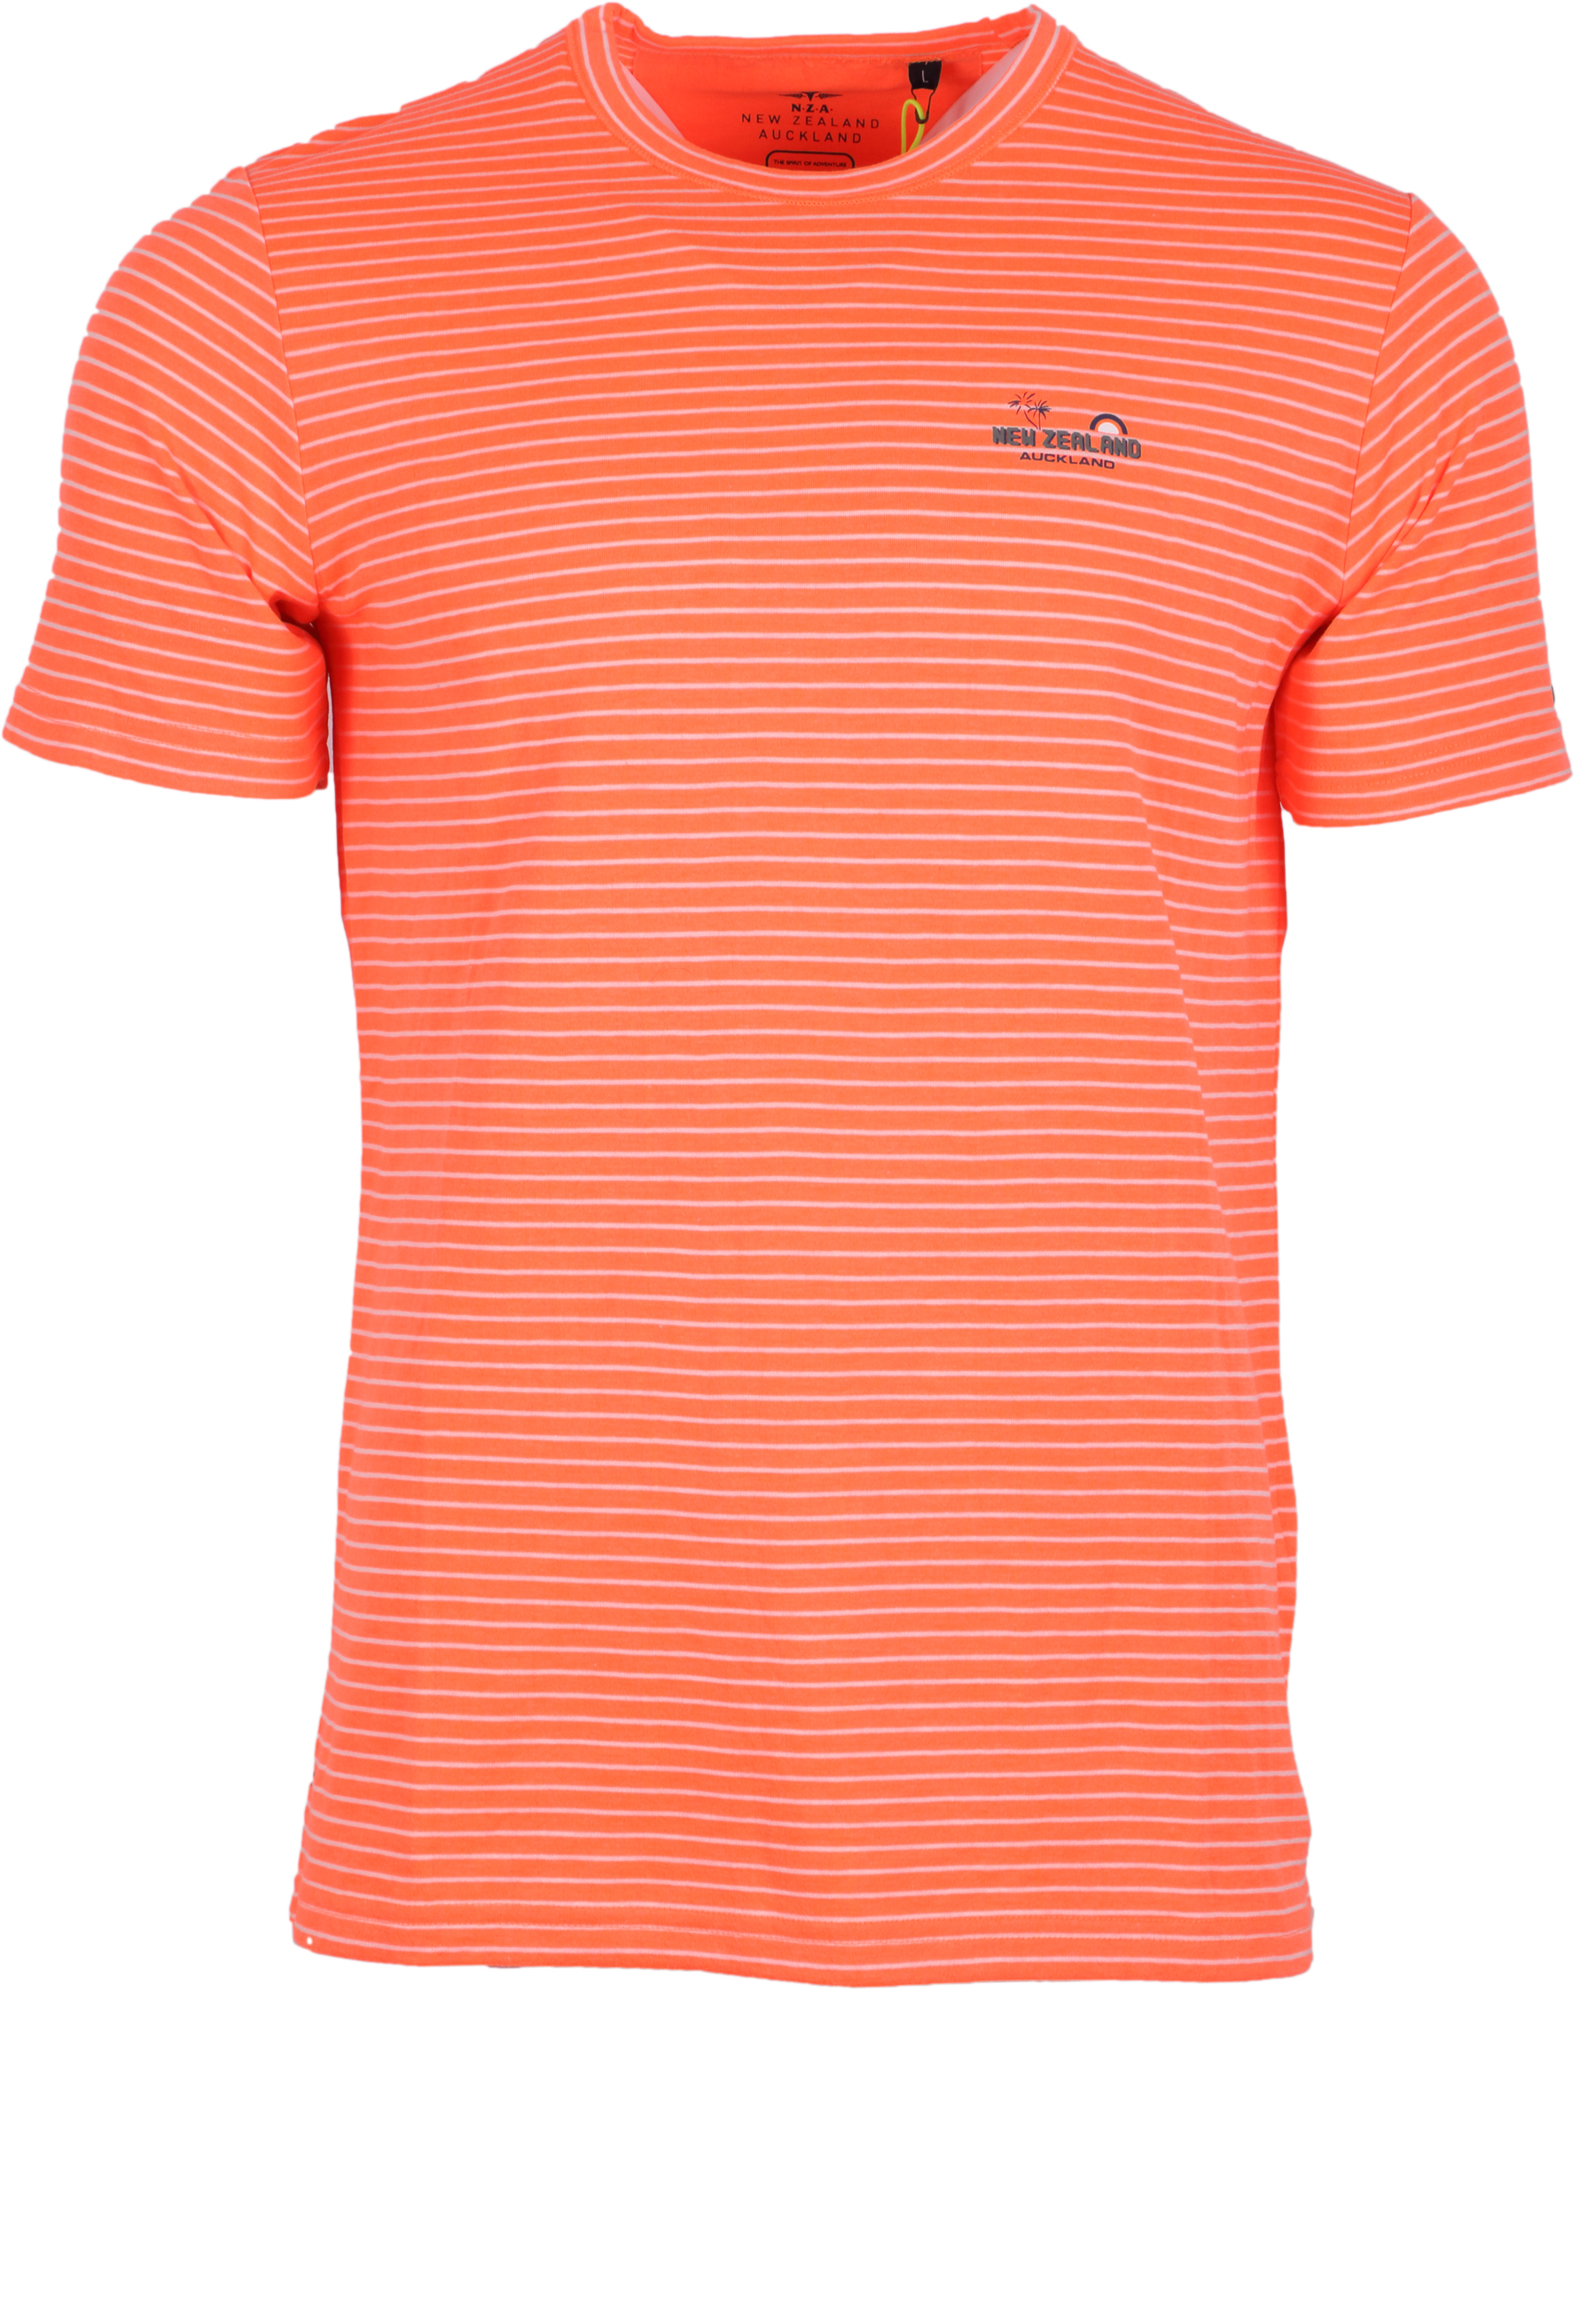 NZA New Zealand Auckland T-Shirt Wimbledon - orange XL